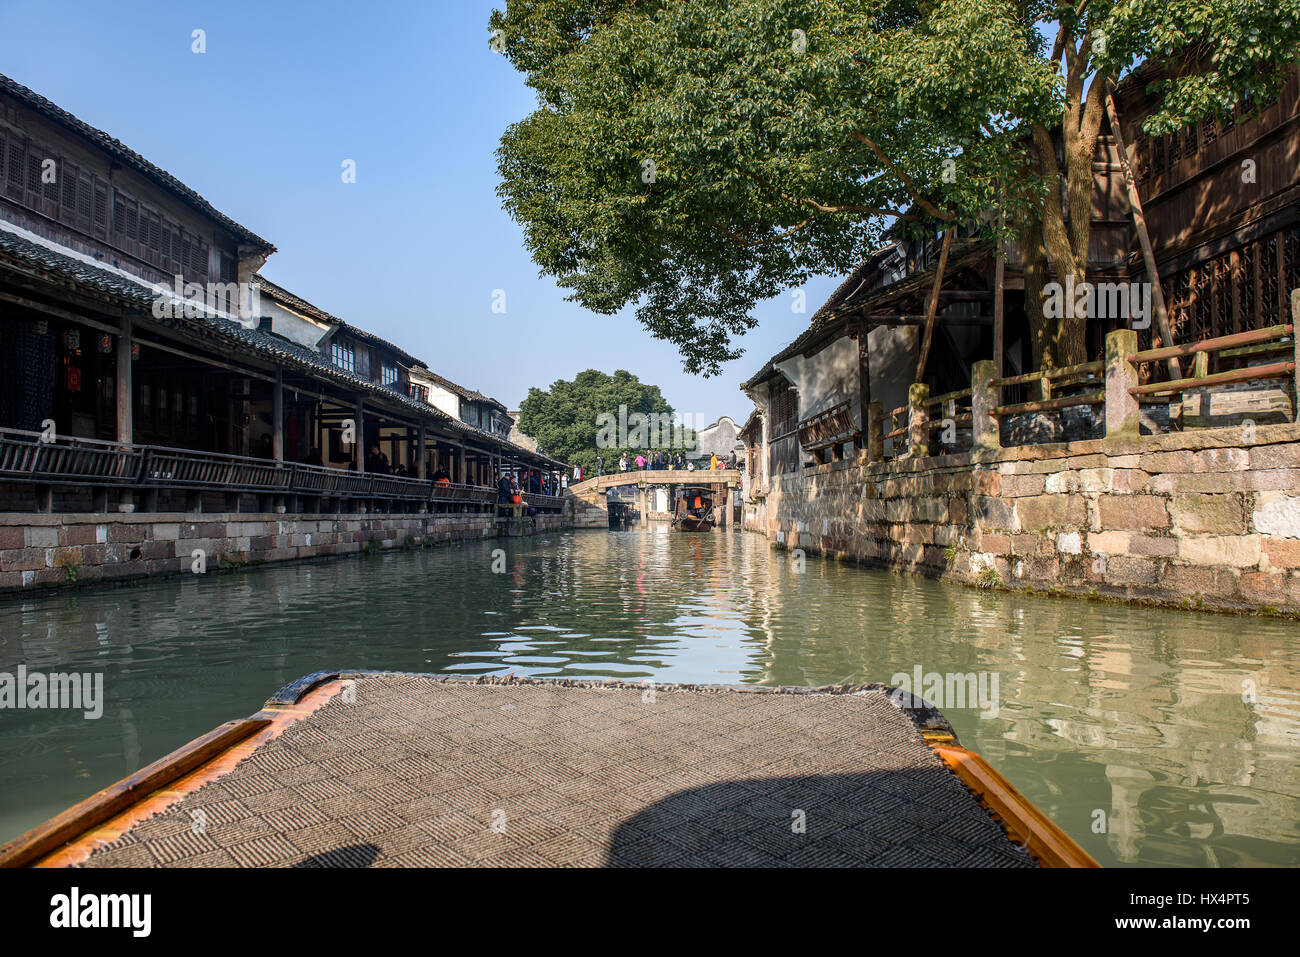 Reisen Sie in Wuzhen per Boot mit ersten Person Winkel. Wuzhen ist eine berühmte alte Wasserstadt in Zhejiang Provinz, China. Stockfoto